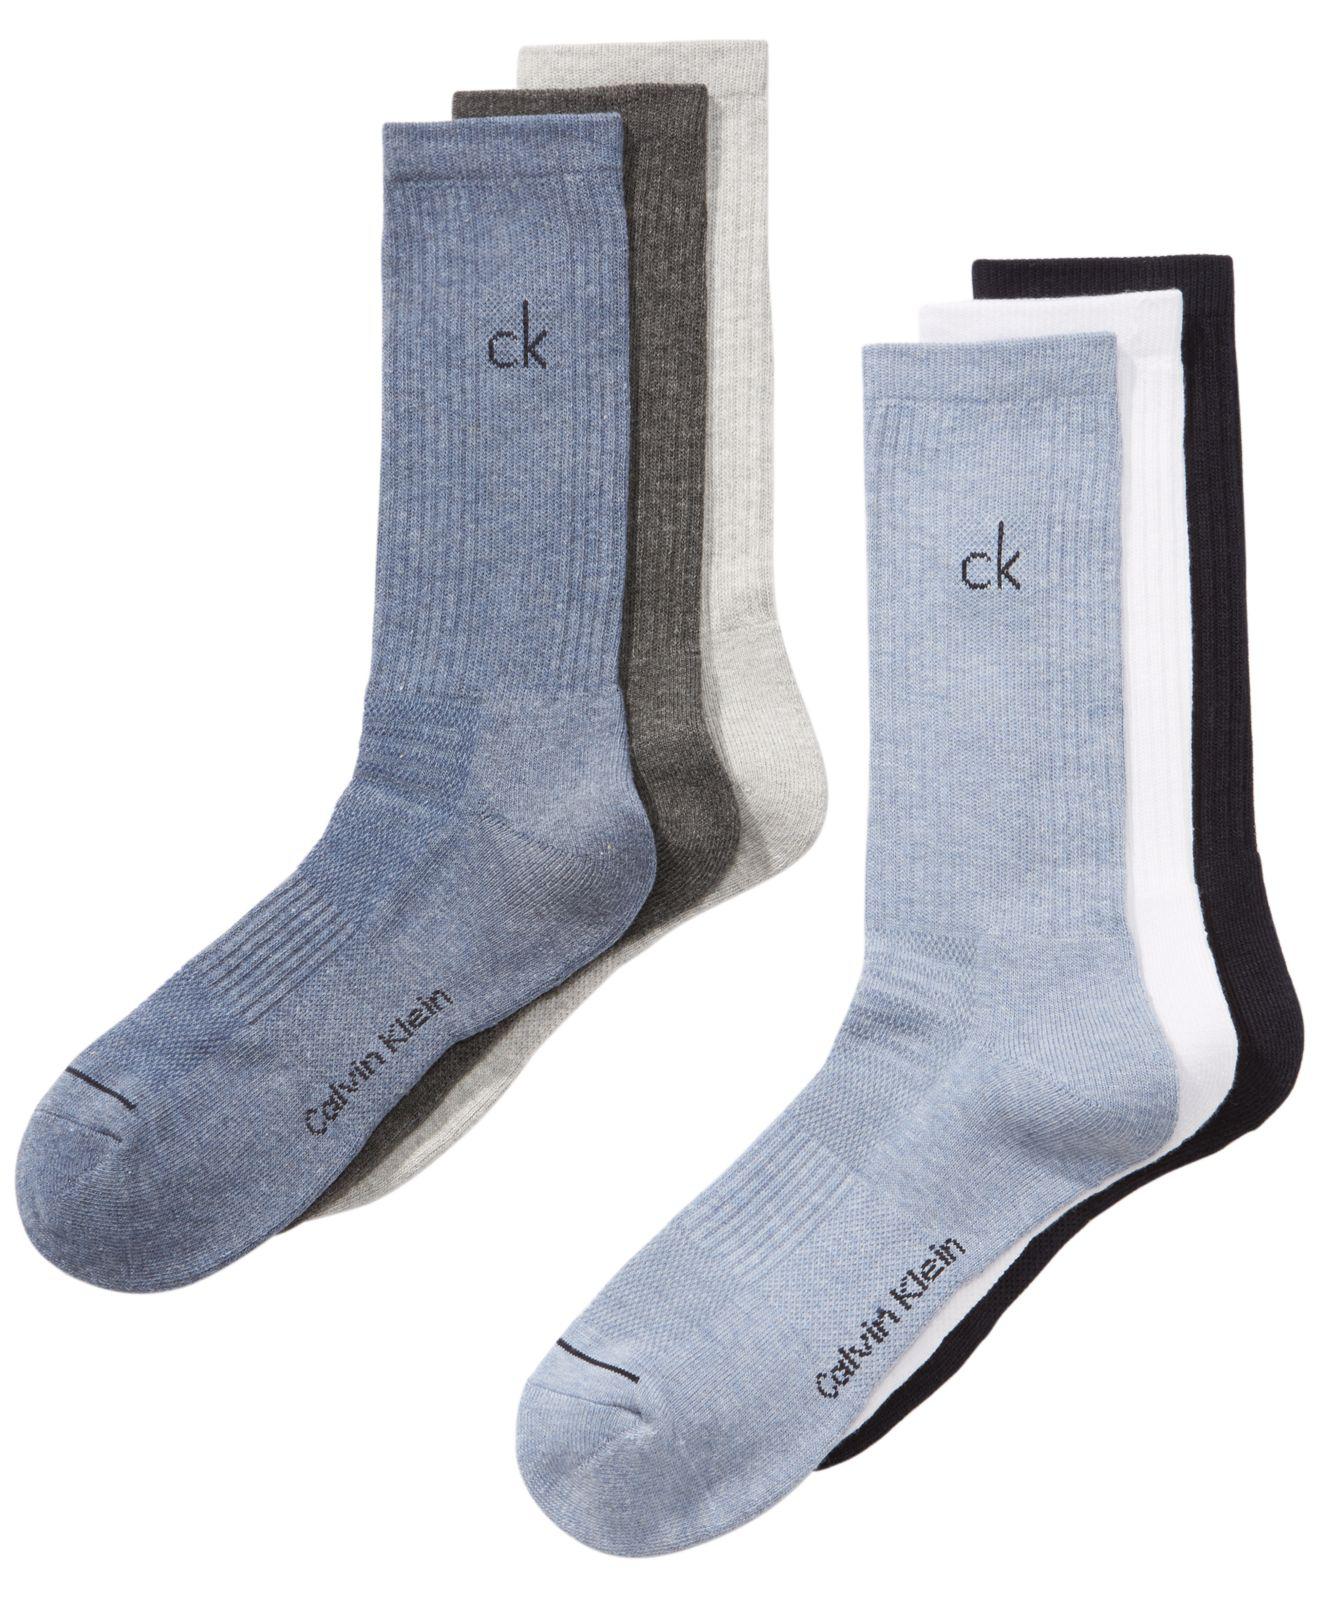 عمل معدل مرض calvin klein navy socks - virelaine.org